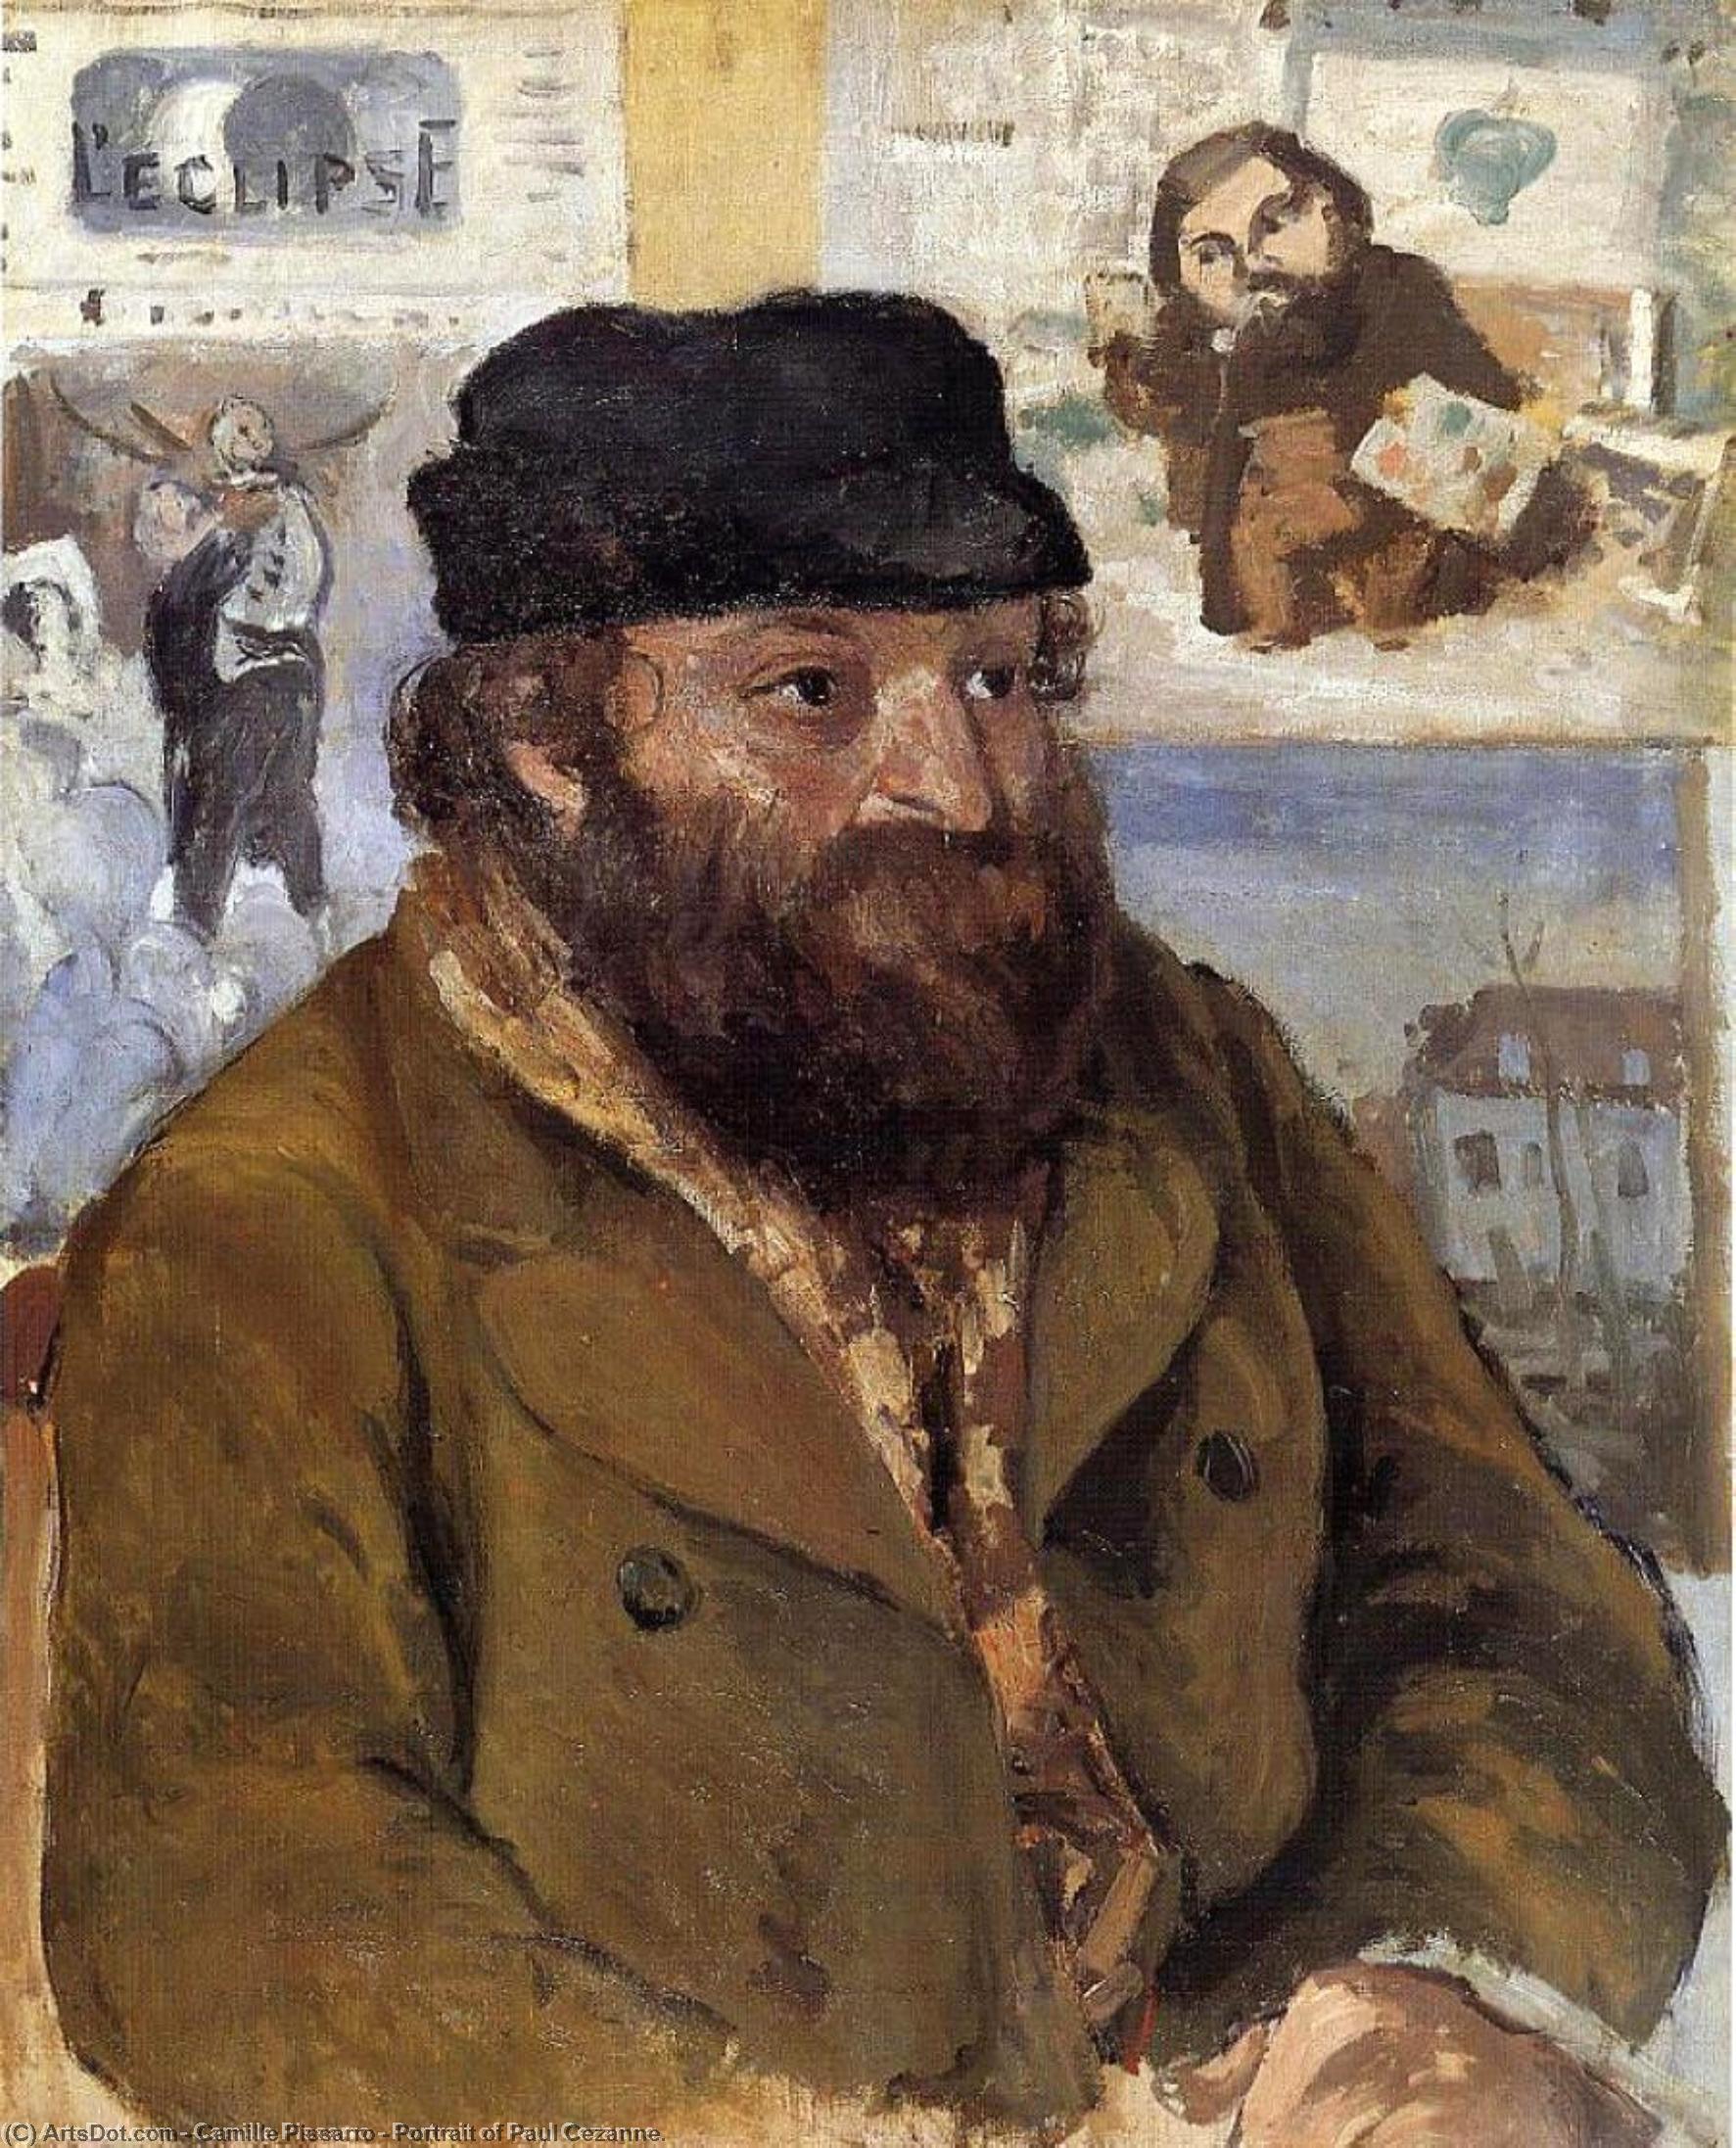 WikiOO.org - Encyclopedia of Fine Arts - Lukisan, Artwork Camille Pissarro - Portrait of Paul Cezanne.